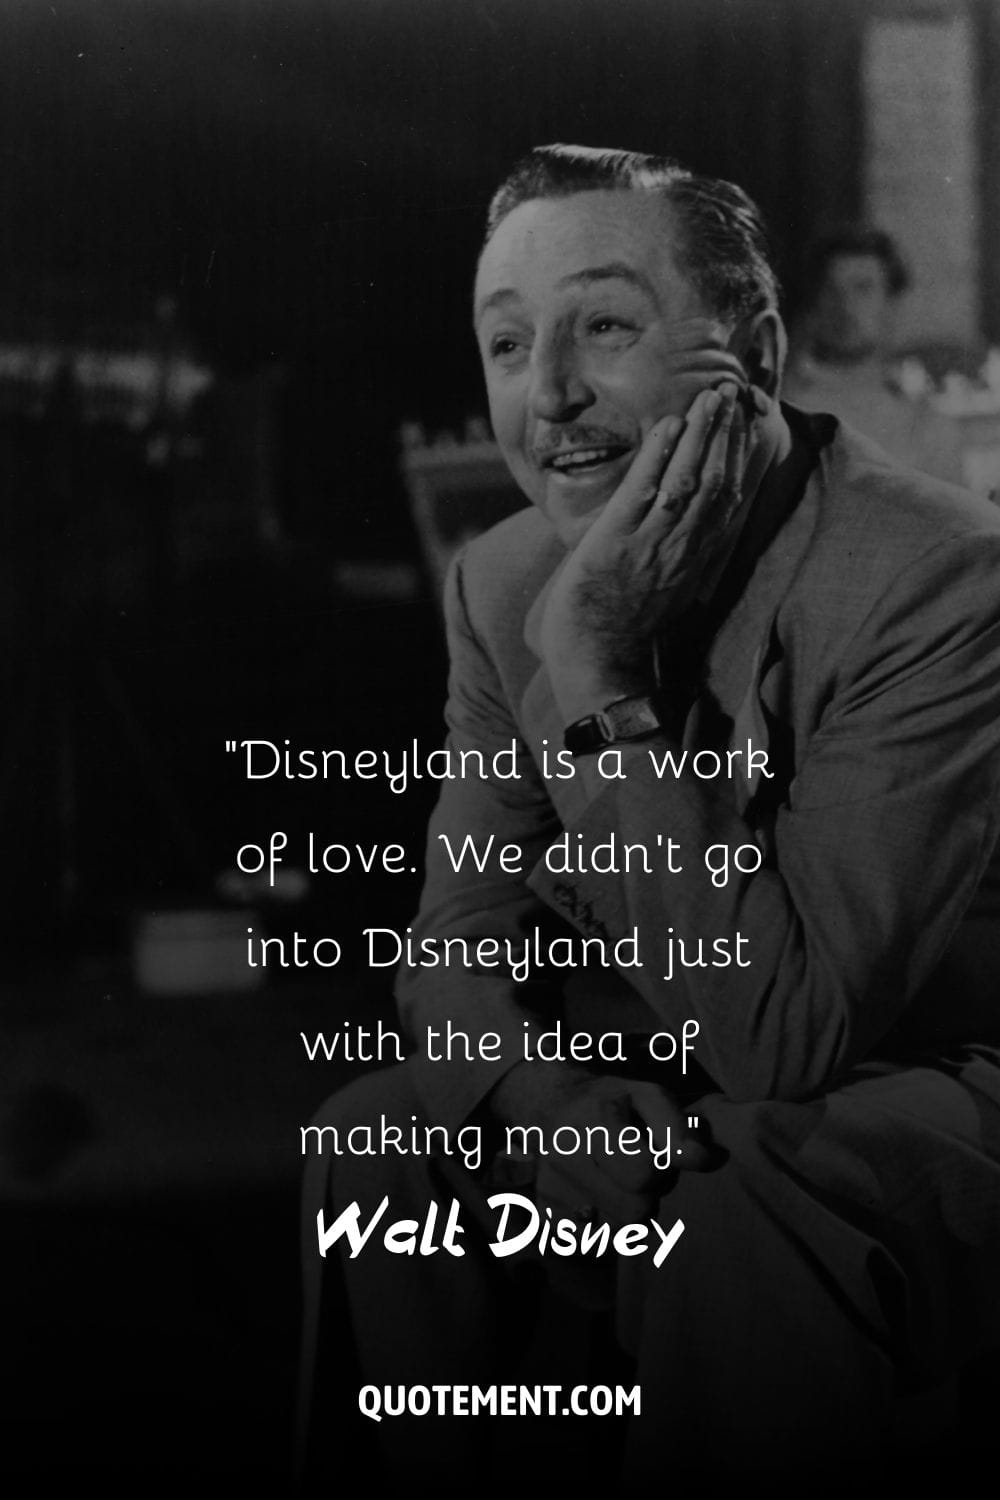 Conmovedora sonrisa de Walt Disney representando la cita de Disneyland.